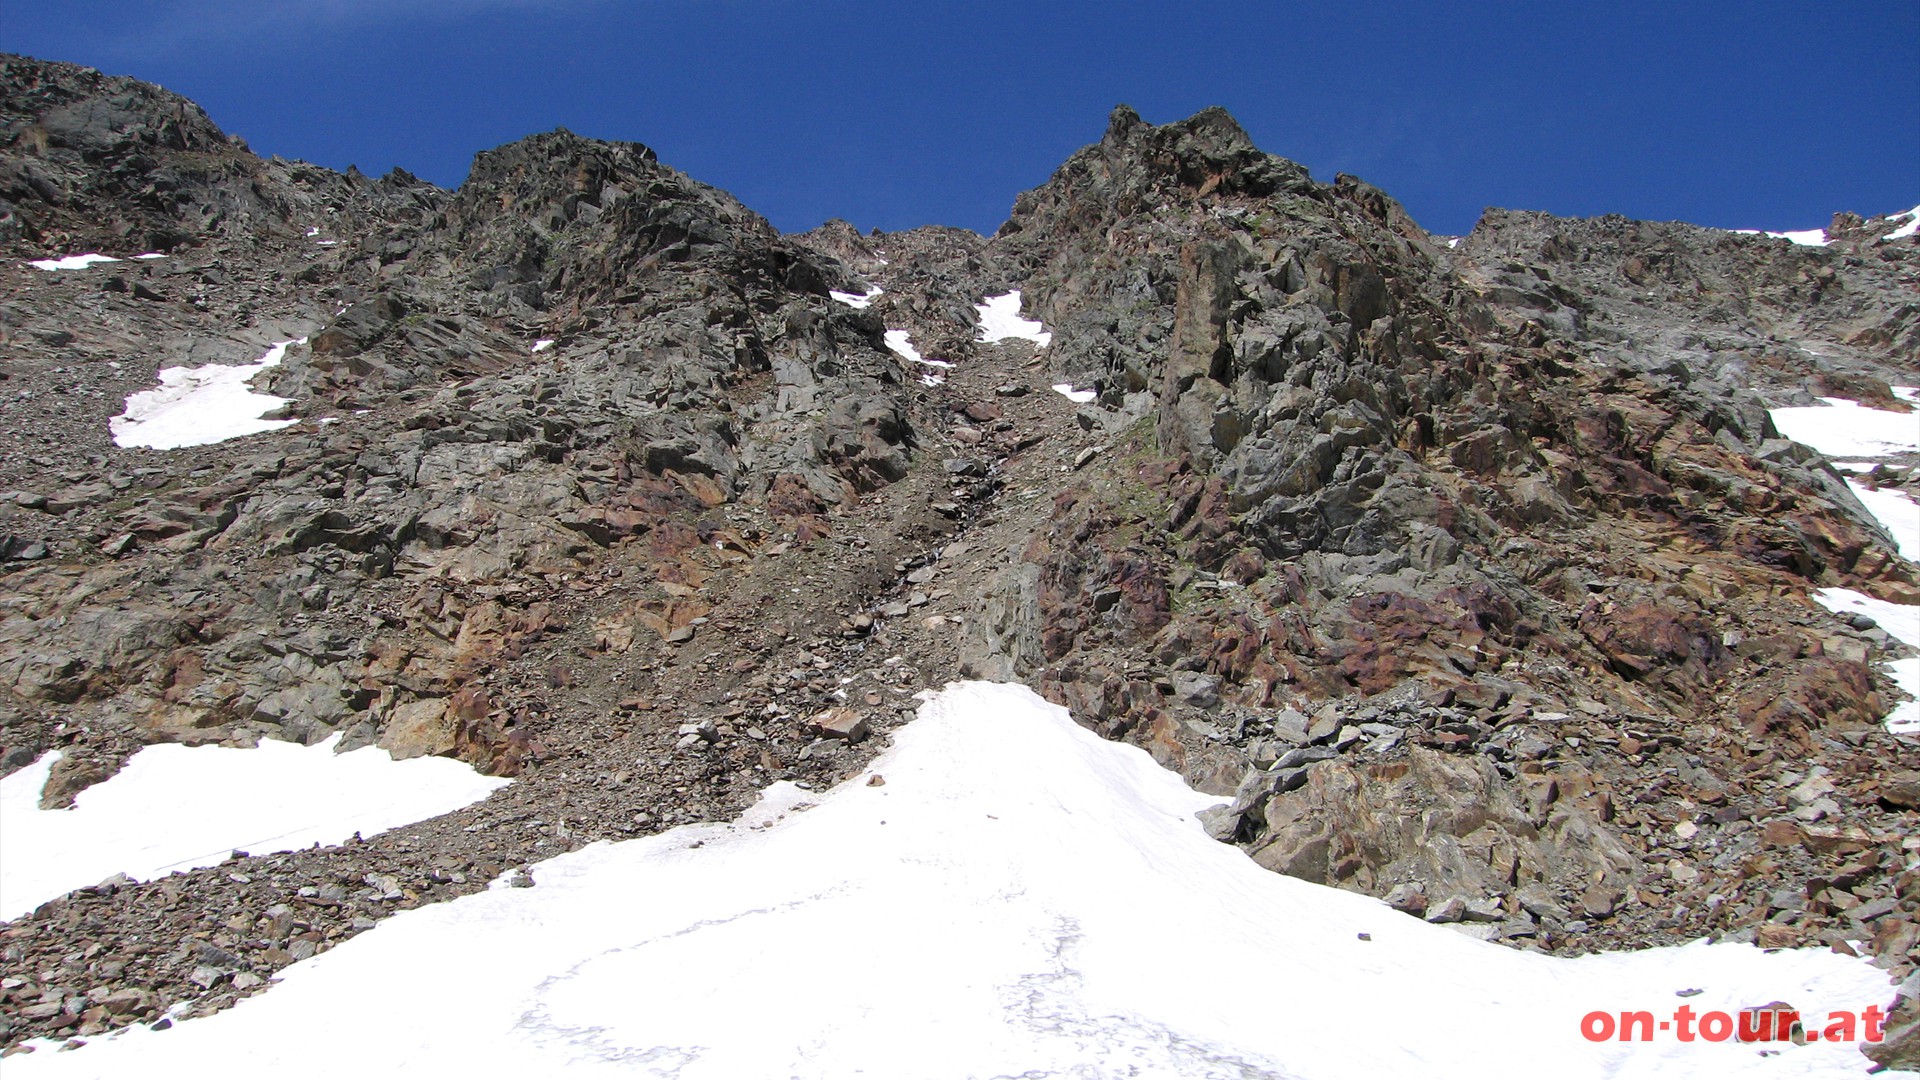 Jetzt wird es steiler, mitunter auch schneebedeckt. Leichte Kletterpassagen bis zum Gipfel.